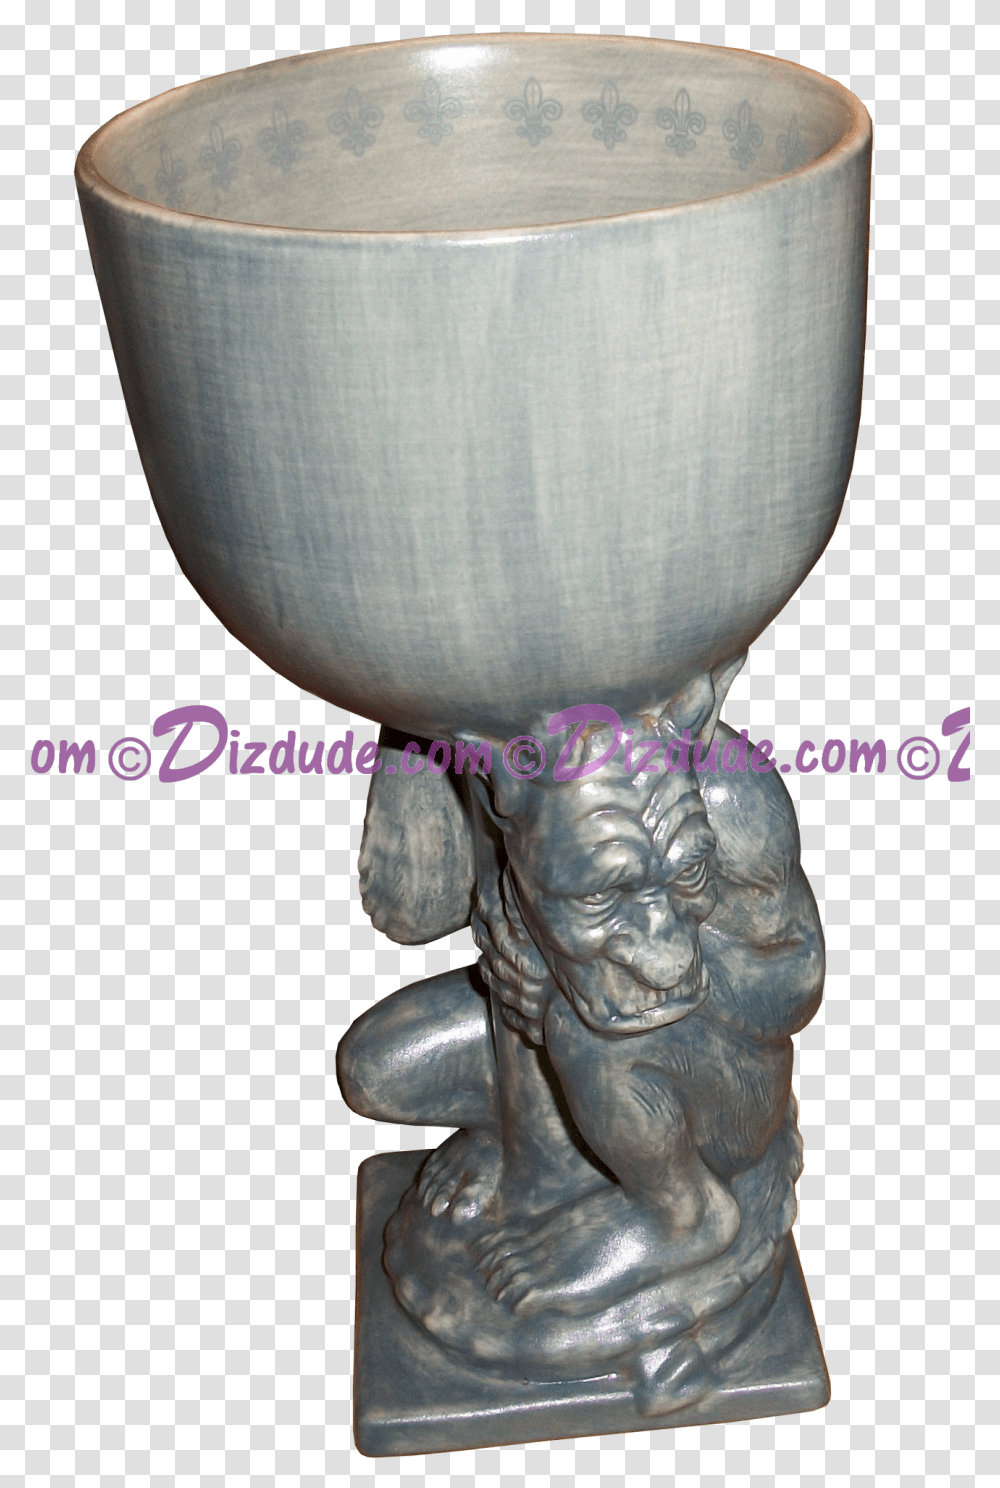 Disney Theme Parks Gargoyle Goblet Dizdude Statue, Figurine, Porcelain, Pottery Transparent Png